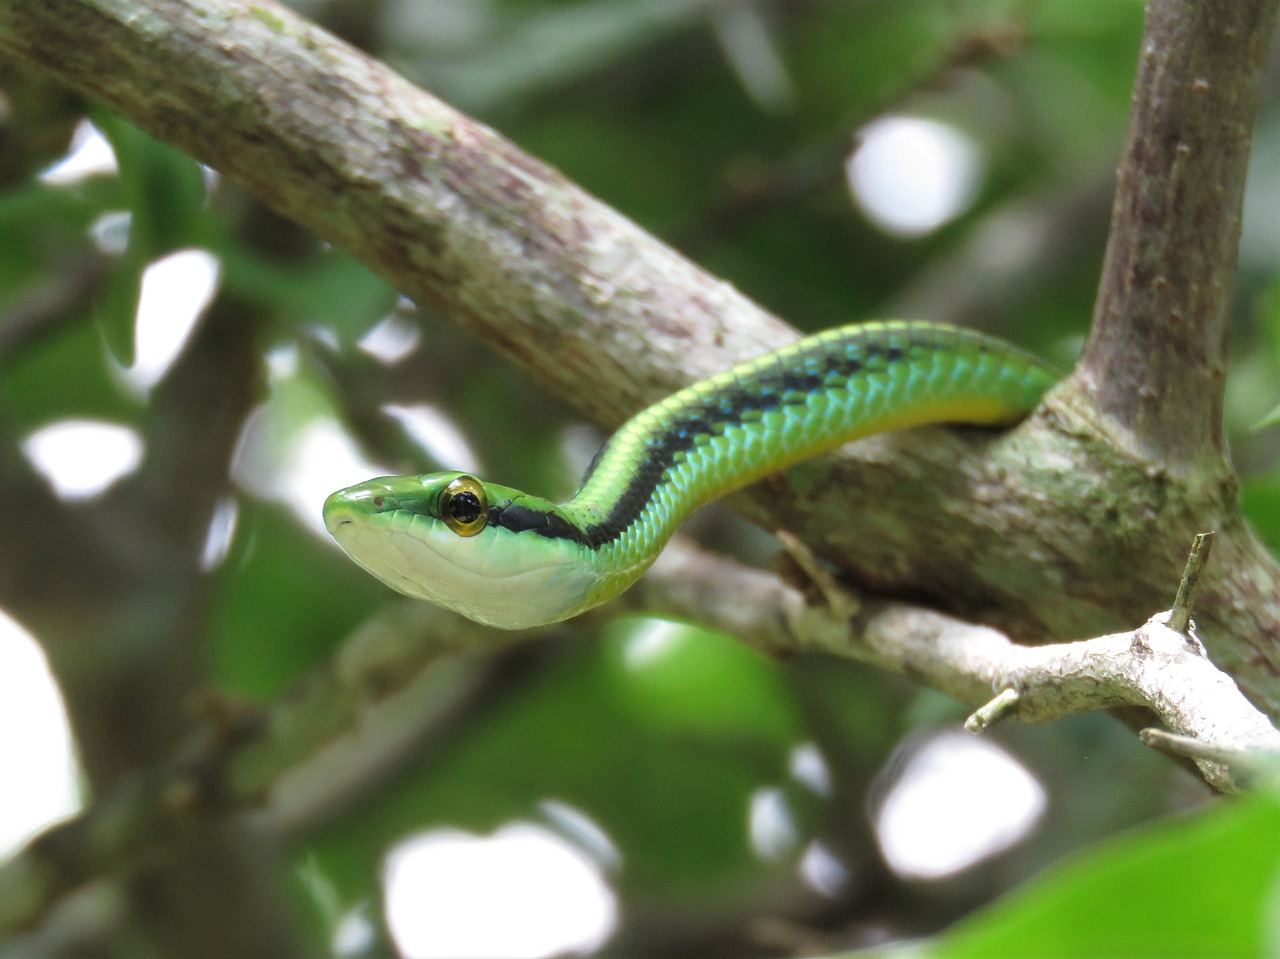 leptophis green snake vine snake free photo